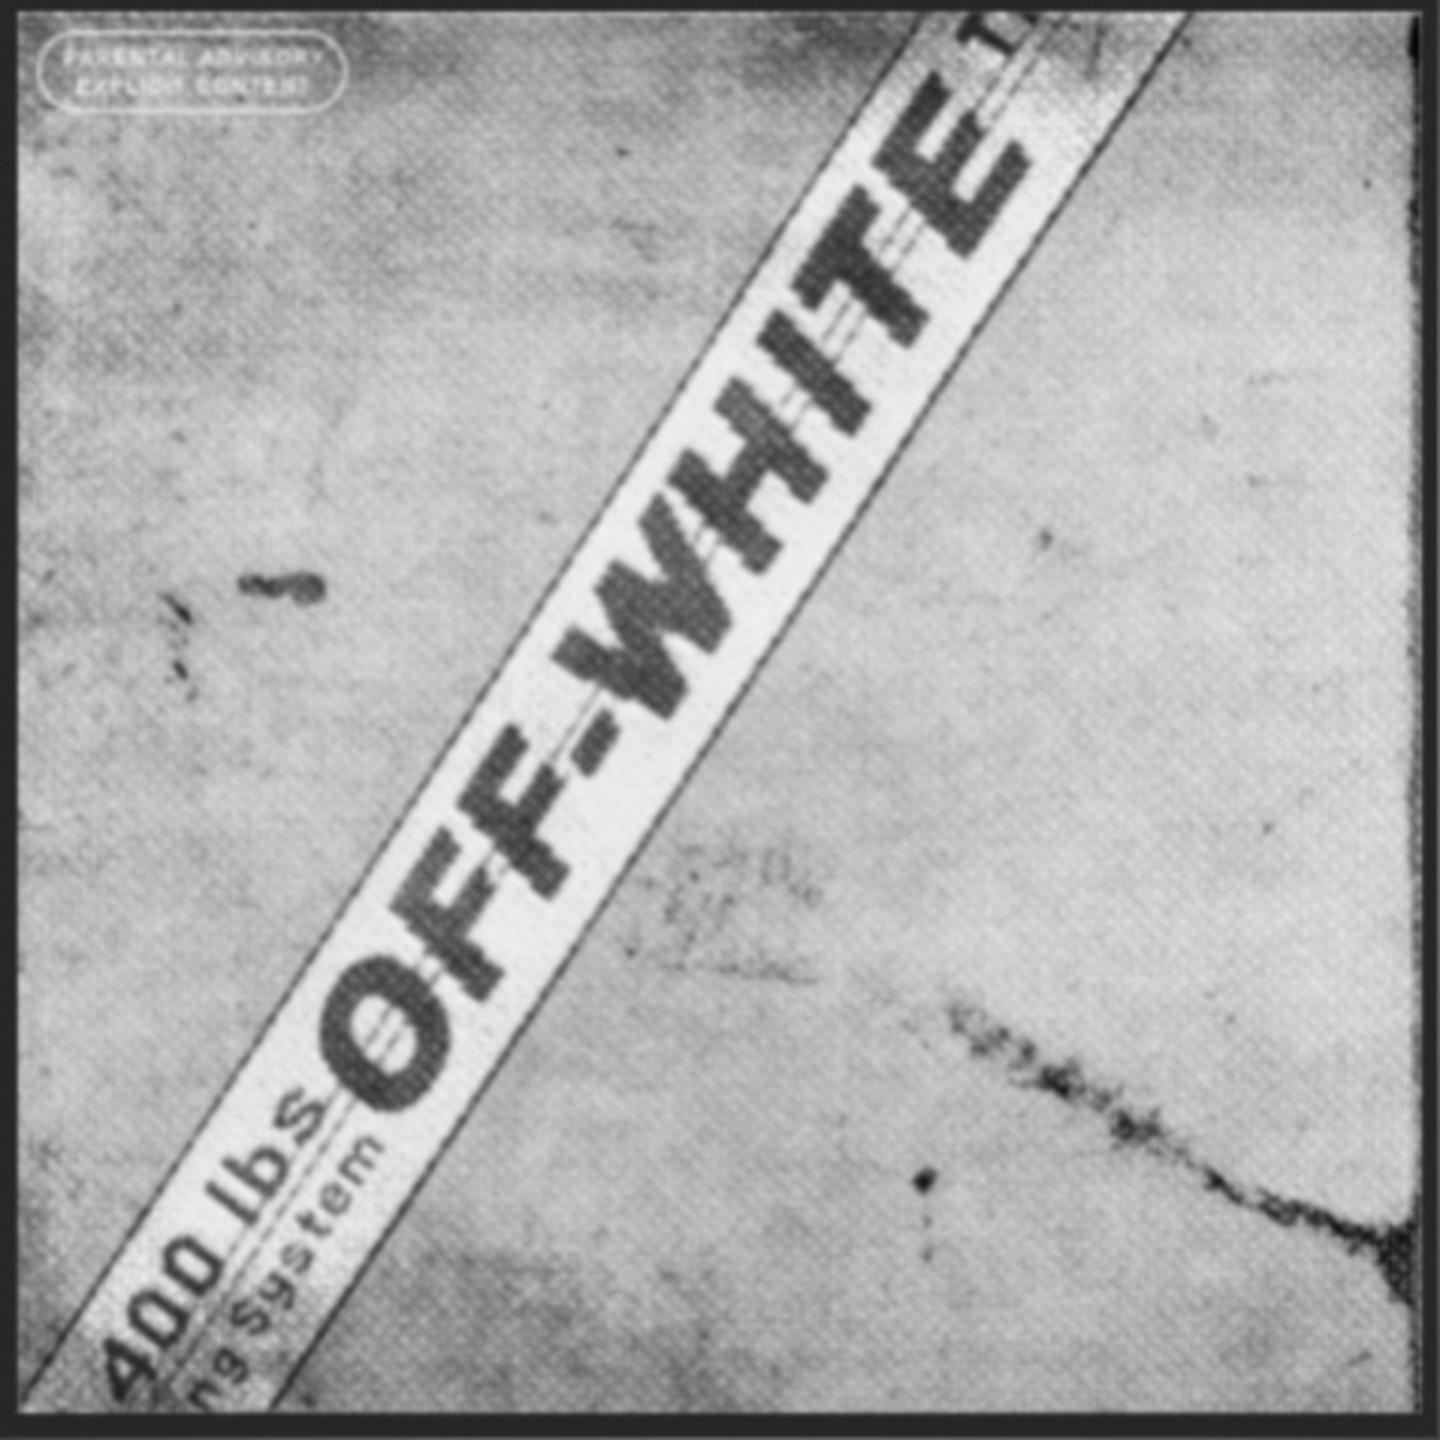 Постер альбома Off-White